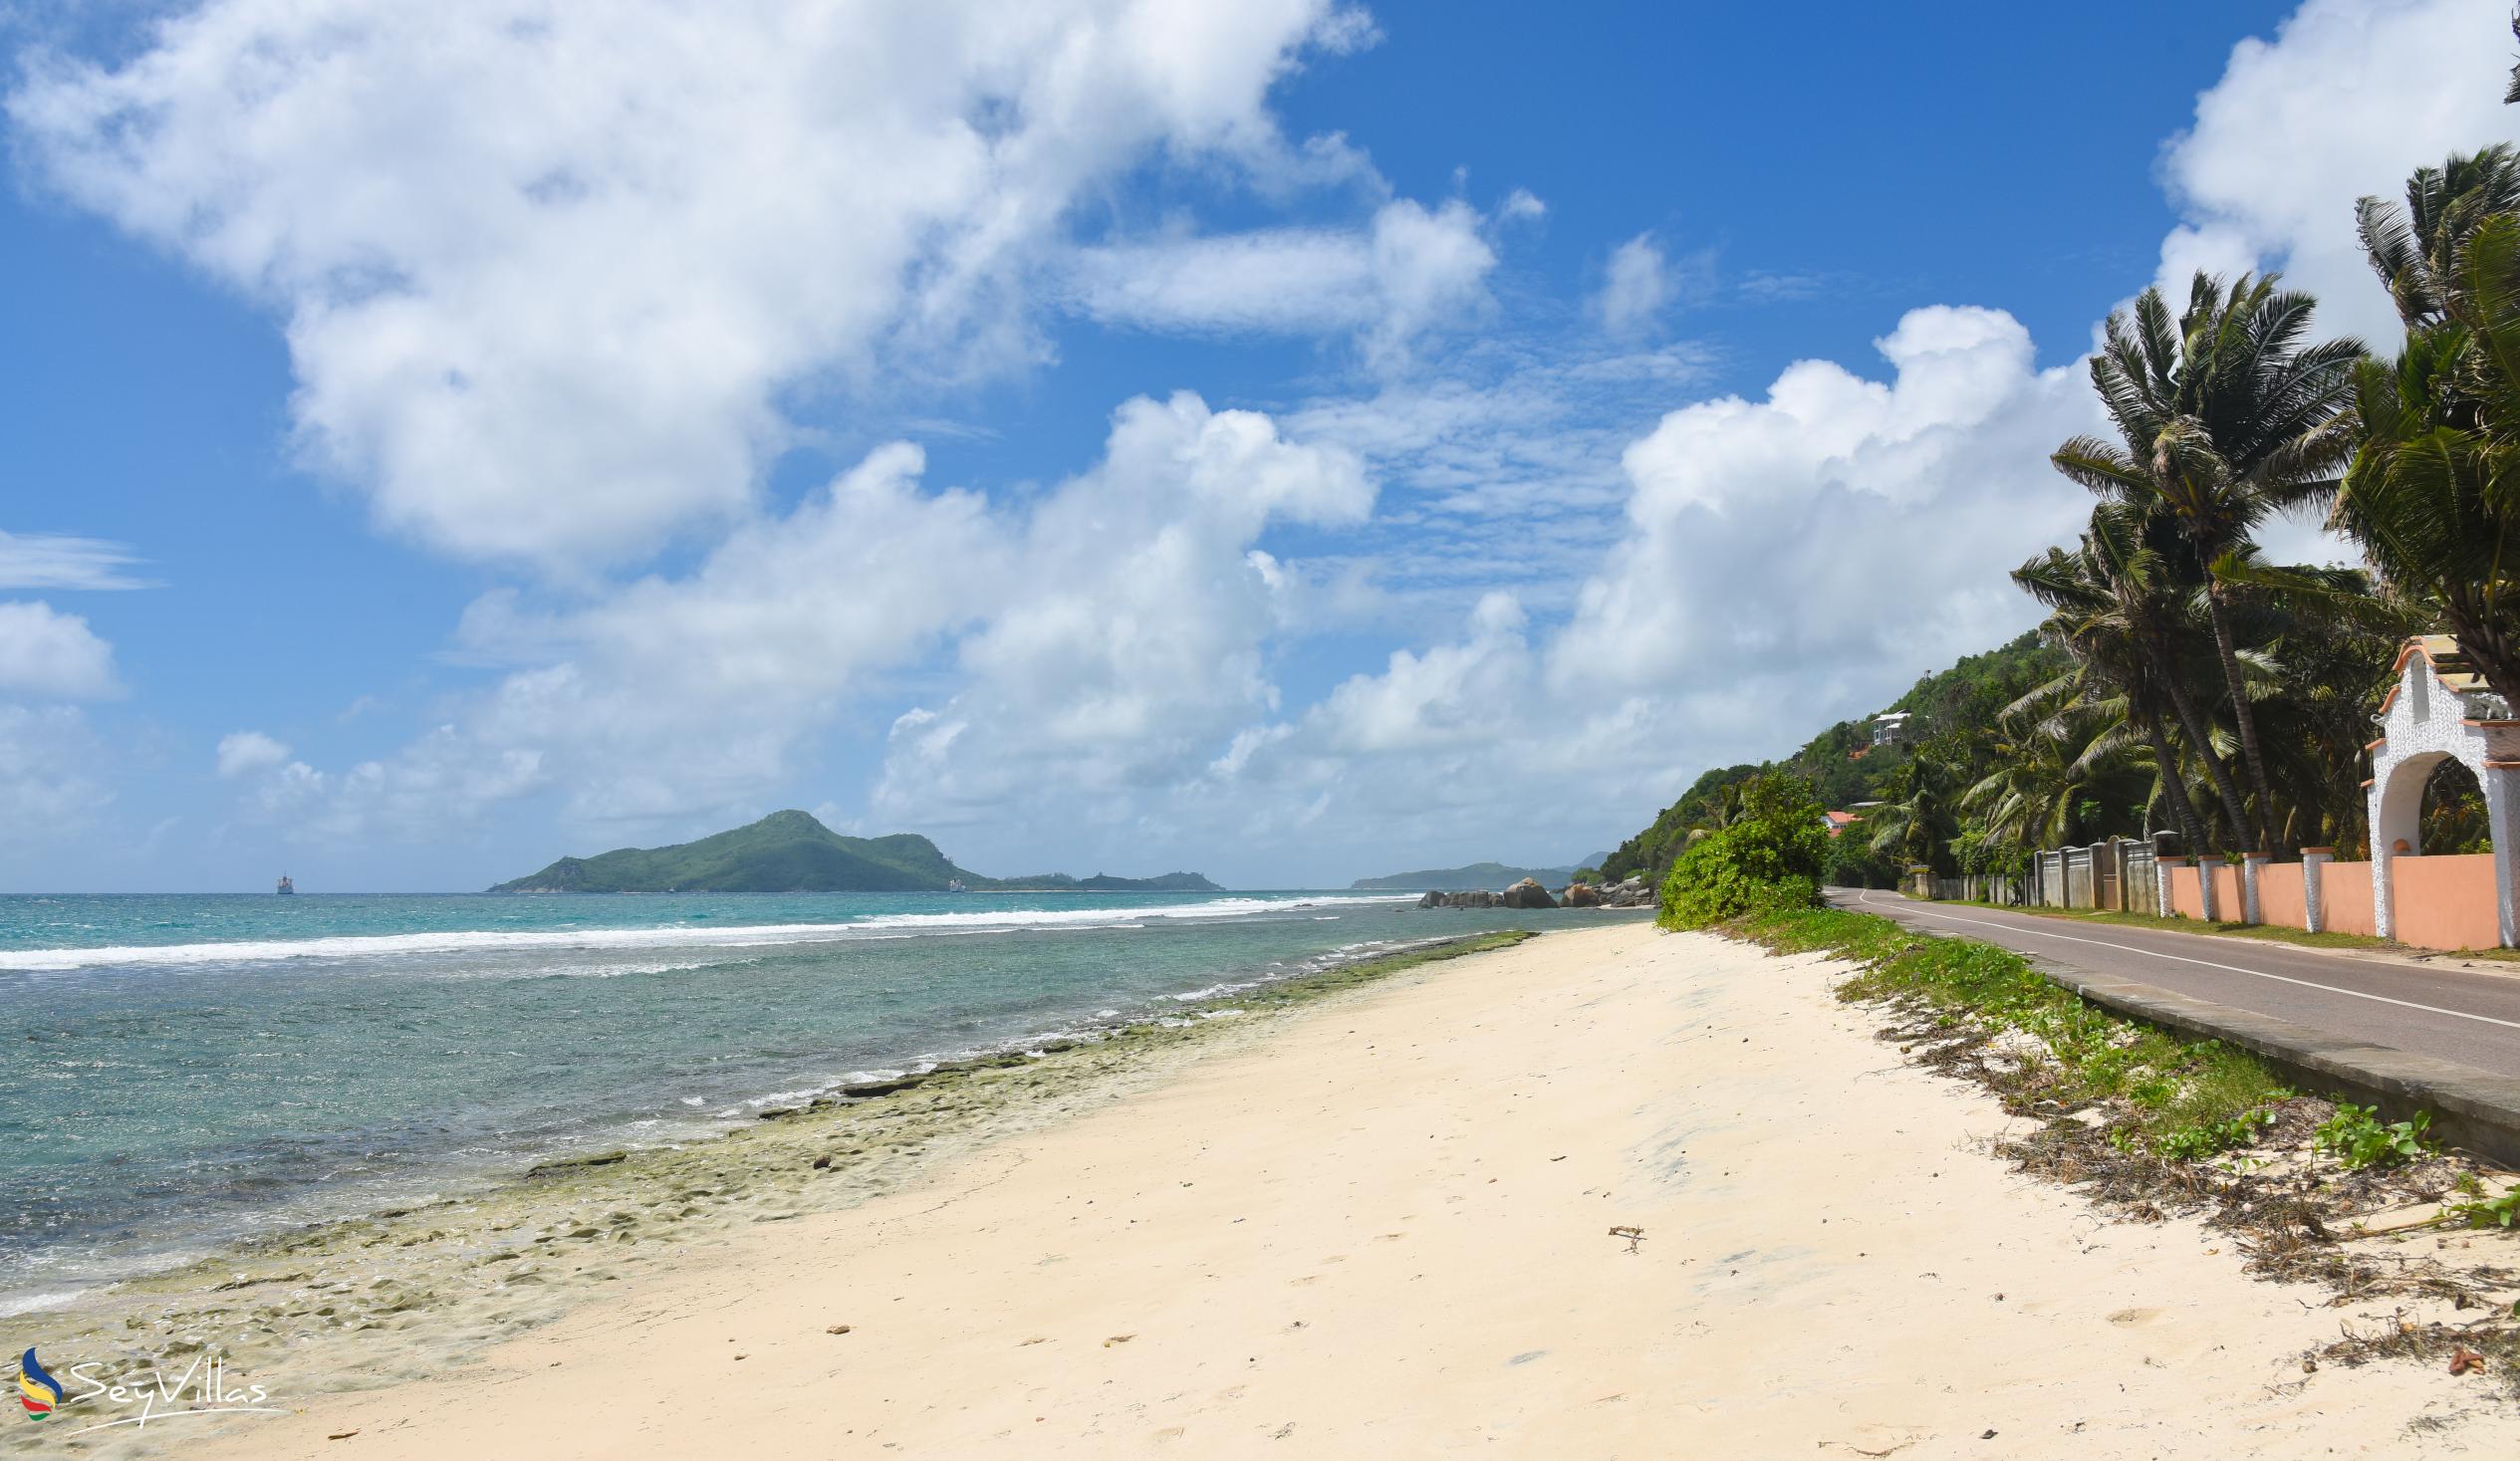 Foto 9: Anse Nord d'Est - Mahé (Seychelles)